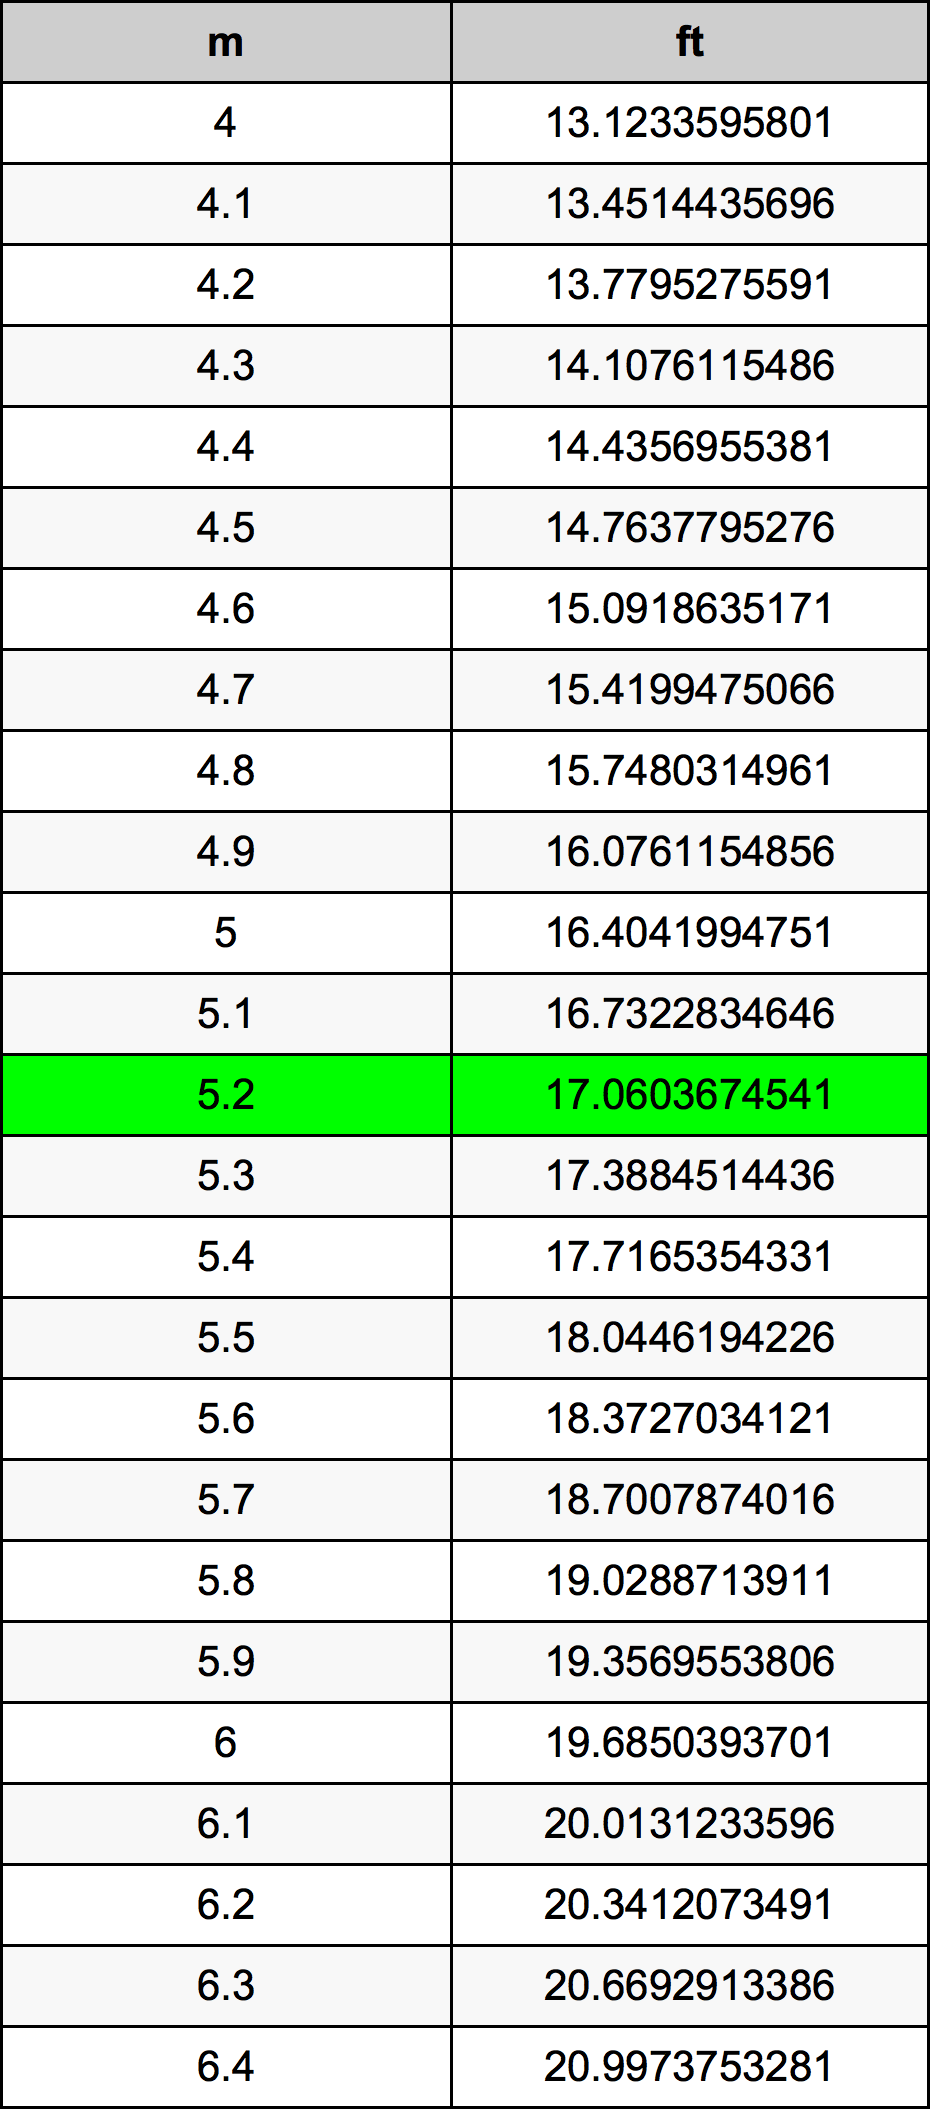 5.2 Metru tabelul de conversie